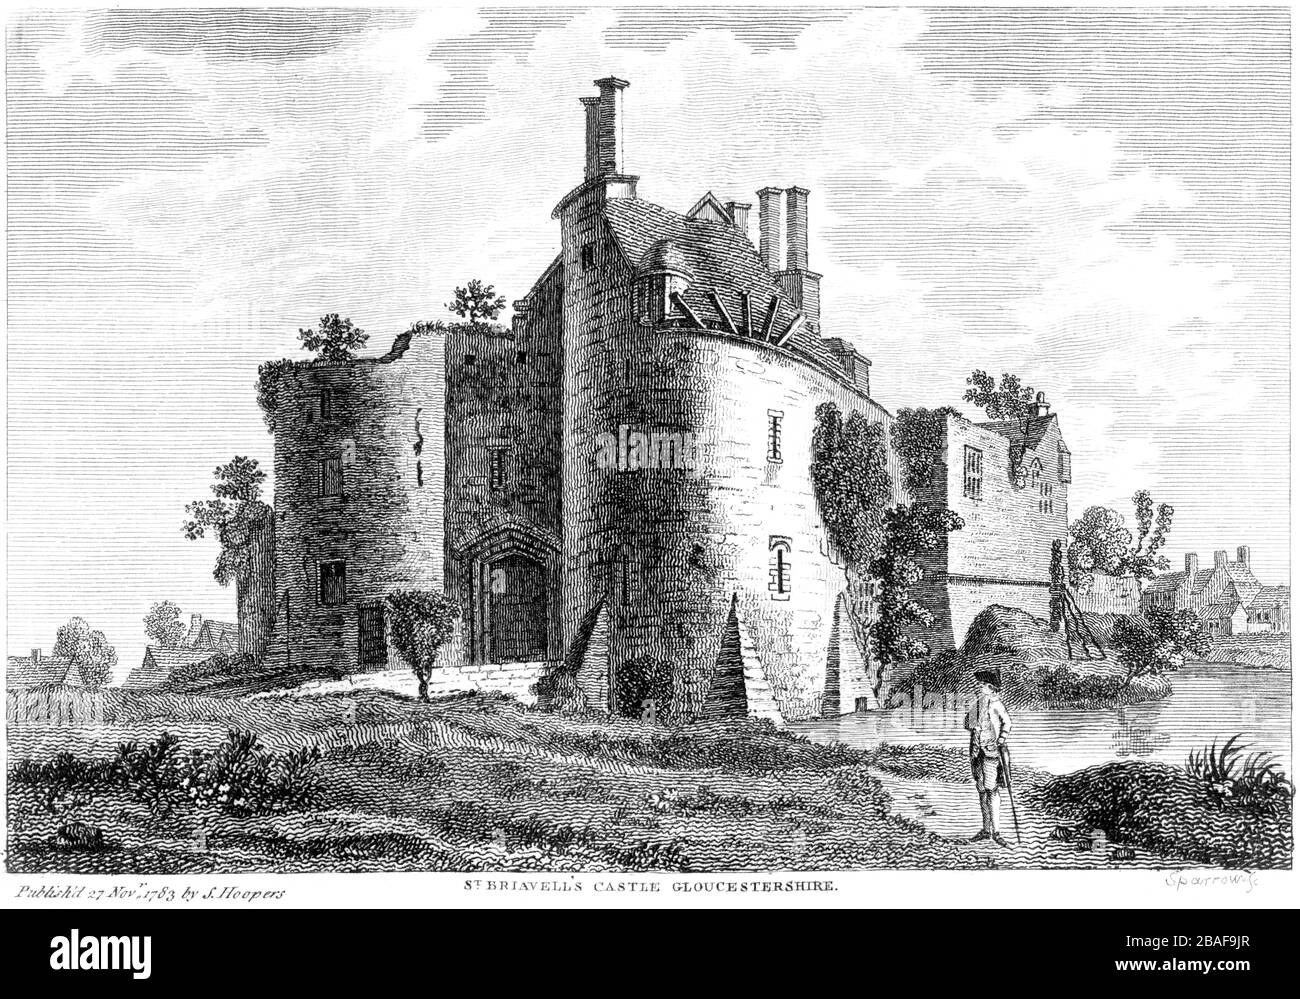 Gravur von St Briavells Castle 1783 (St Briavels) Gloucestershire gescannt auf hohe Res aus einem Buch, das um das Jahr 1786 veröffentlicht wurde. Ich glaube, dass das Urheberrecht frei ist. Stockfoto